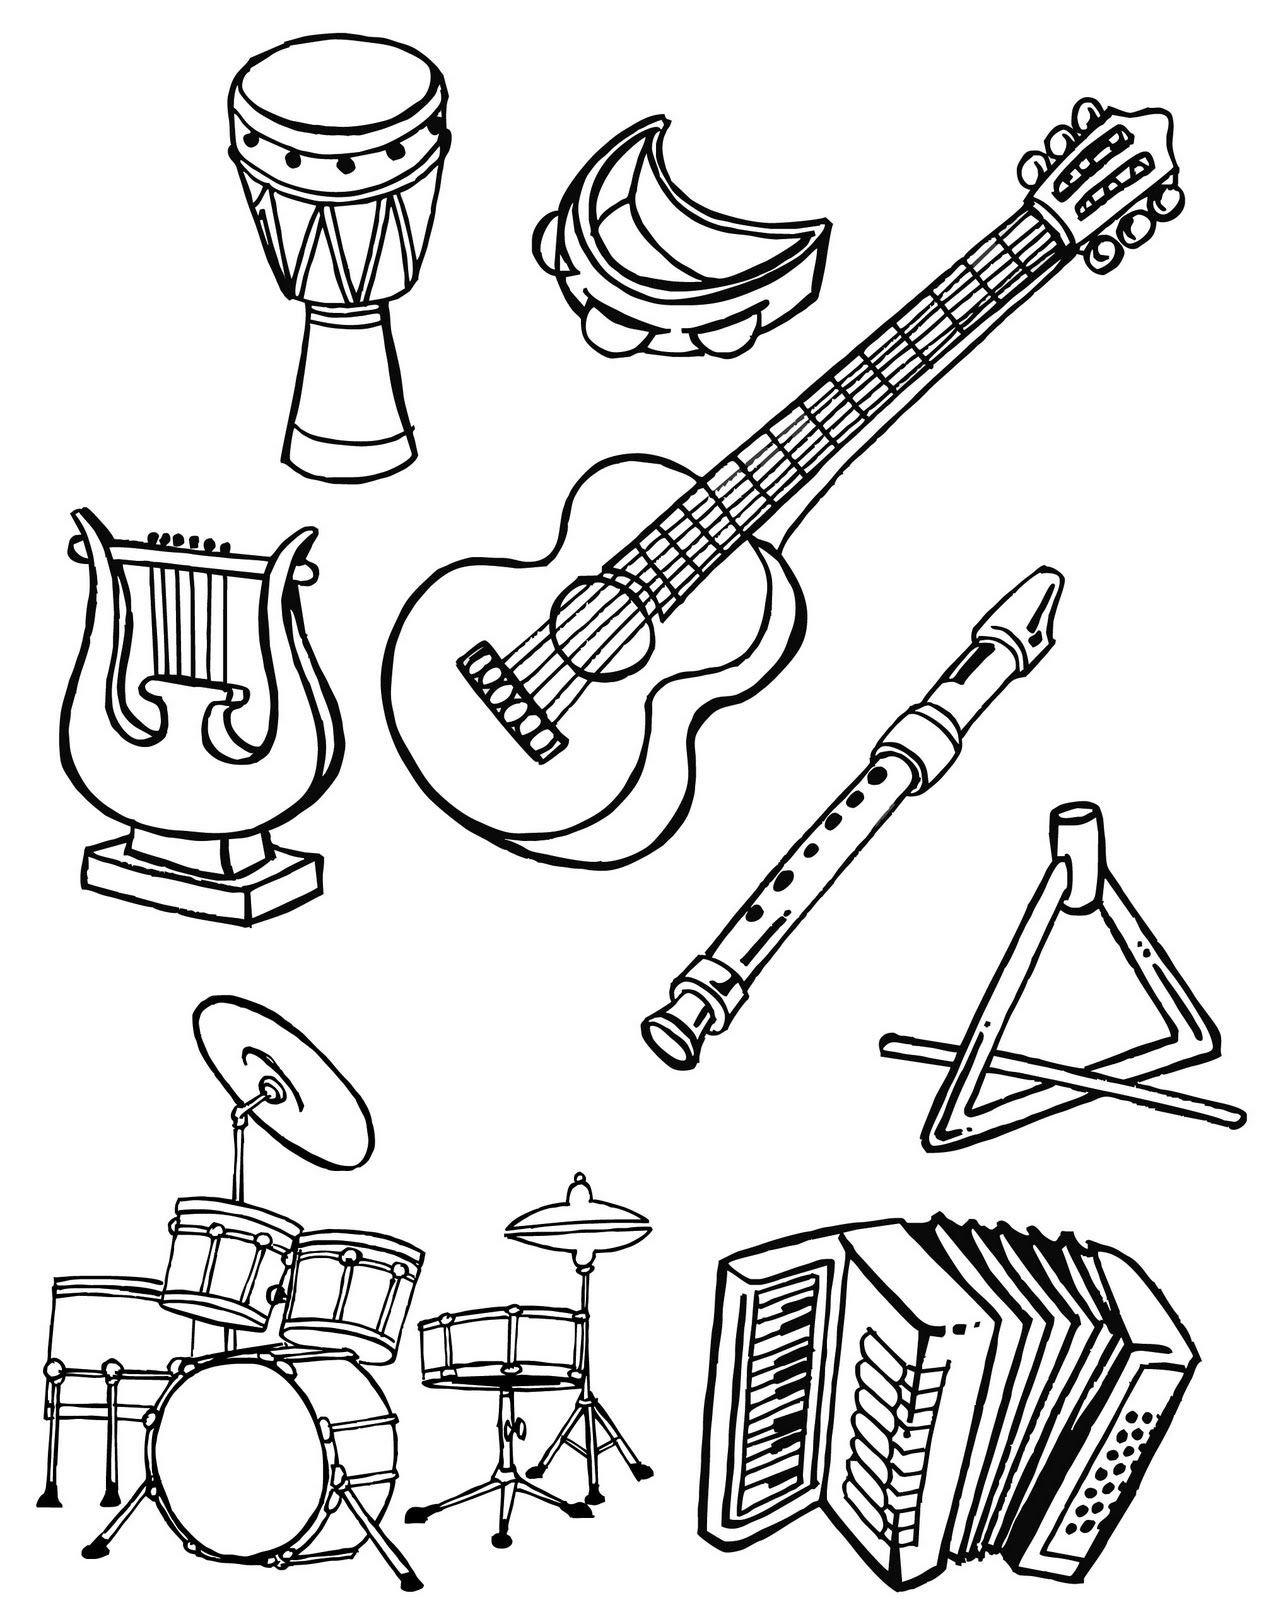 Распечатать музыкальный инструмент. Музыкальные инструменты раскраска. Раскраска музыкальные инструменты для детей. Раскраски муз инструментов для детей. Раскраска для малышей музыкальные инструменты.